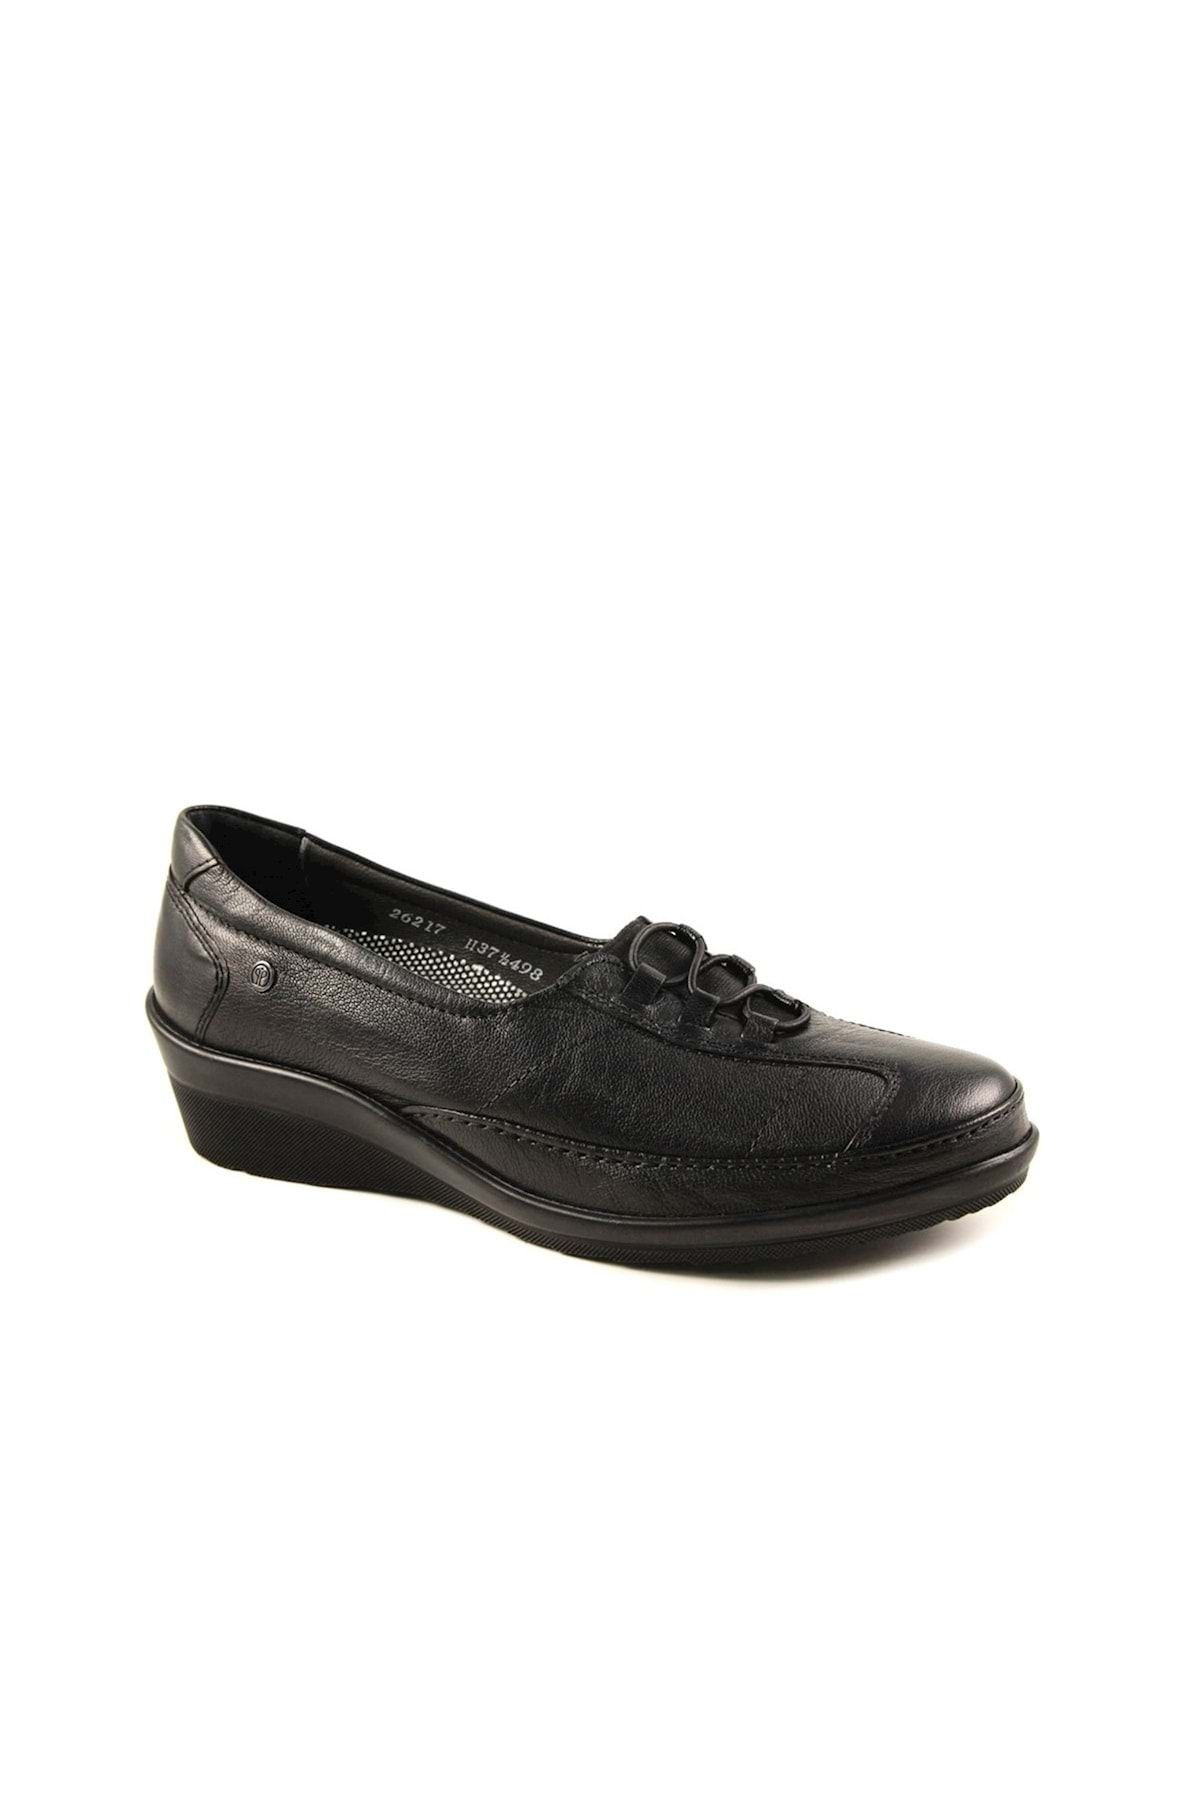 Forelli Salda-h Comfort Kadın Ayakkabı Siyah